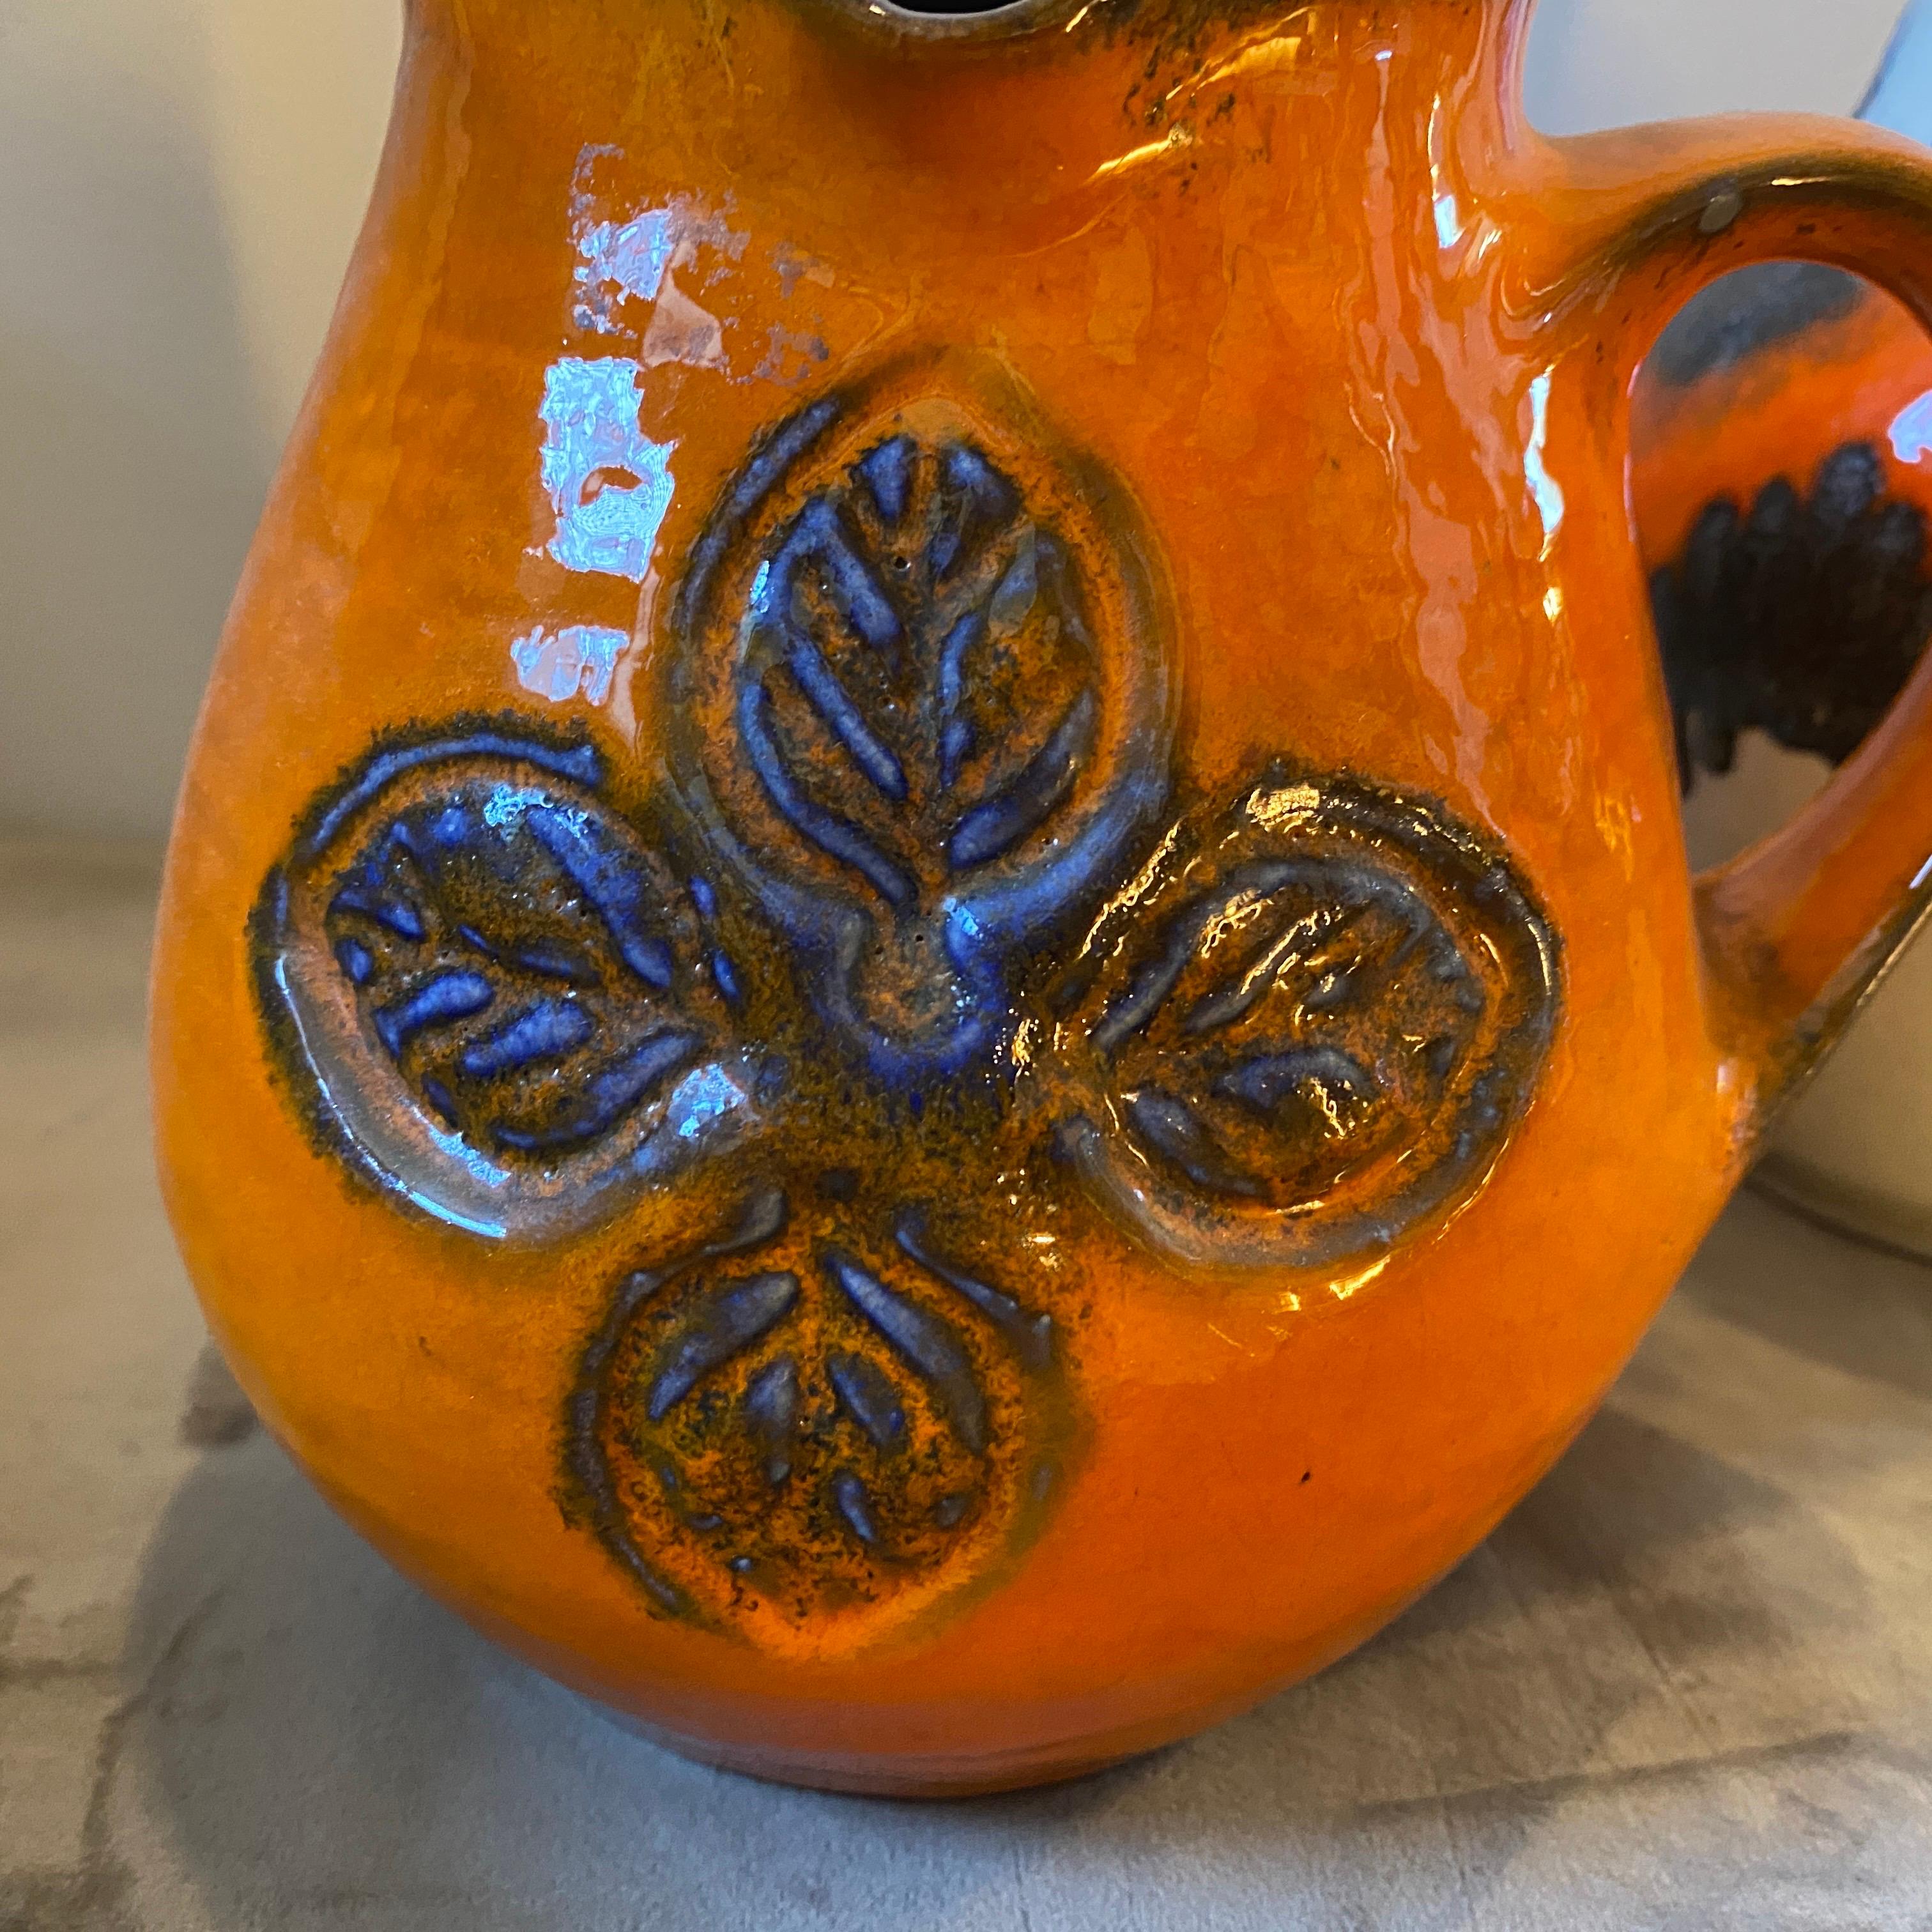 Zwei fette Lava-Keramikkrüge, die in den siebziger Jahren in Deutschland handgefertigt wurden. Sie sind in schönem Zustand, die Höhe des kleinen ist 17 cm. Die orange Farbe ist eine ikonische Farbe der fetten Lava-Keramikproduktion. Diese deutschen